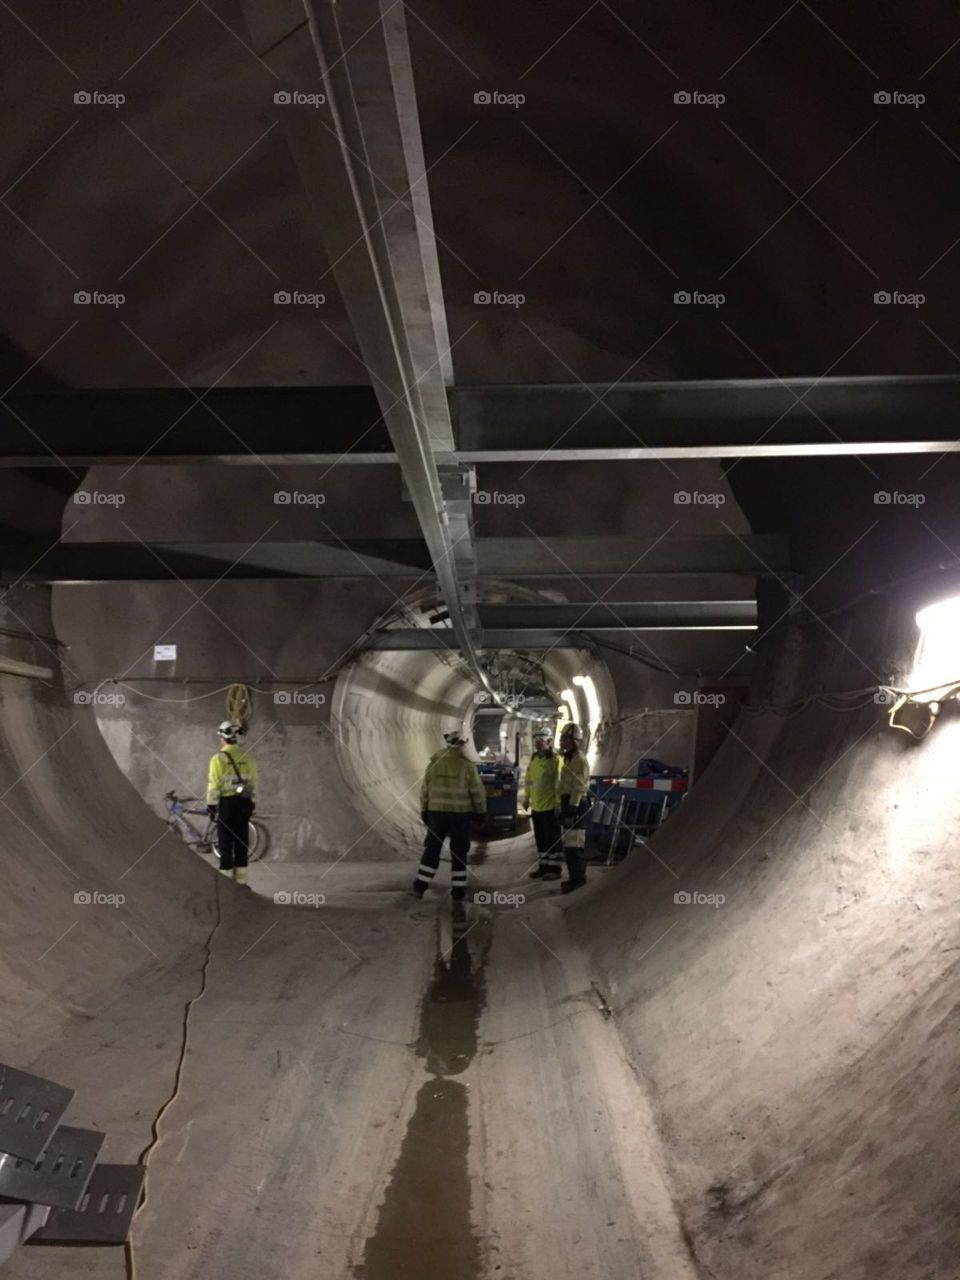 Tunnel work